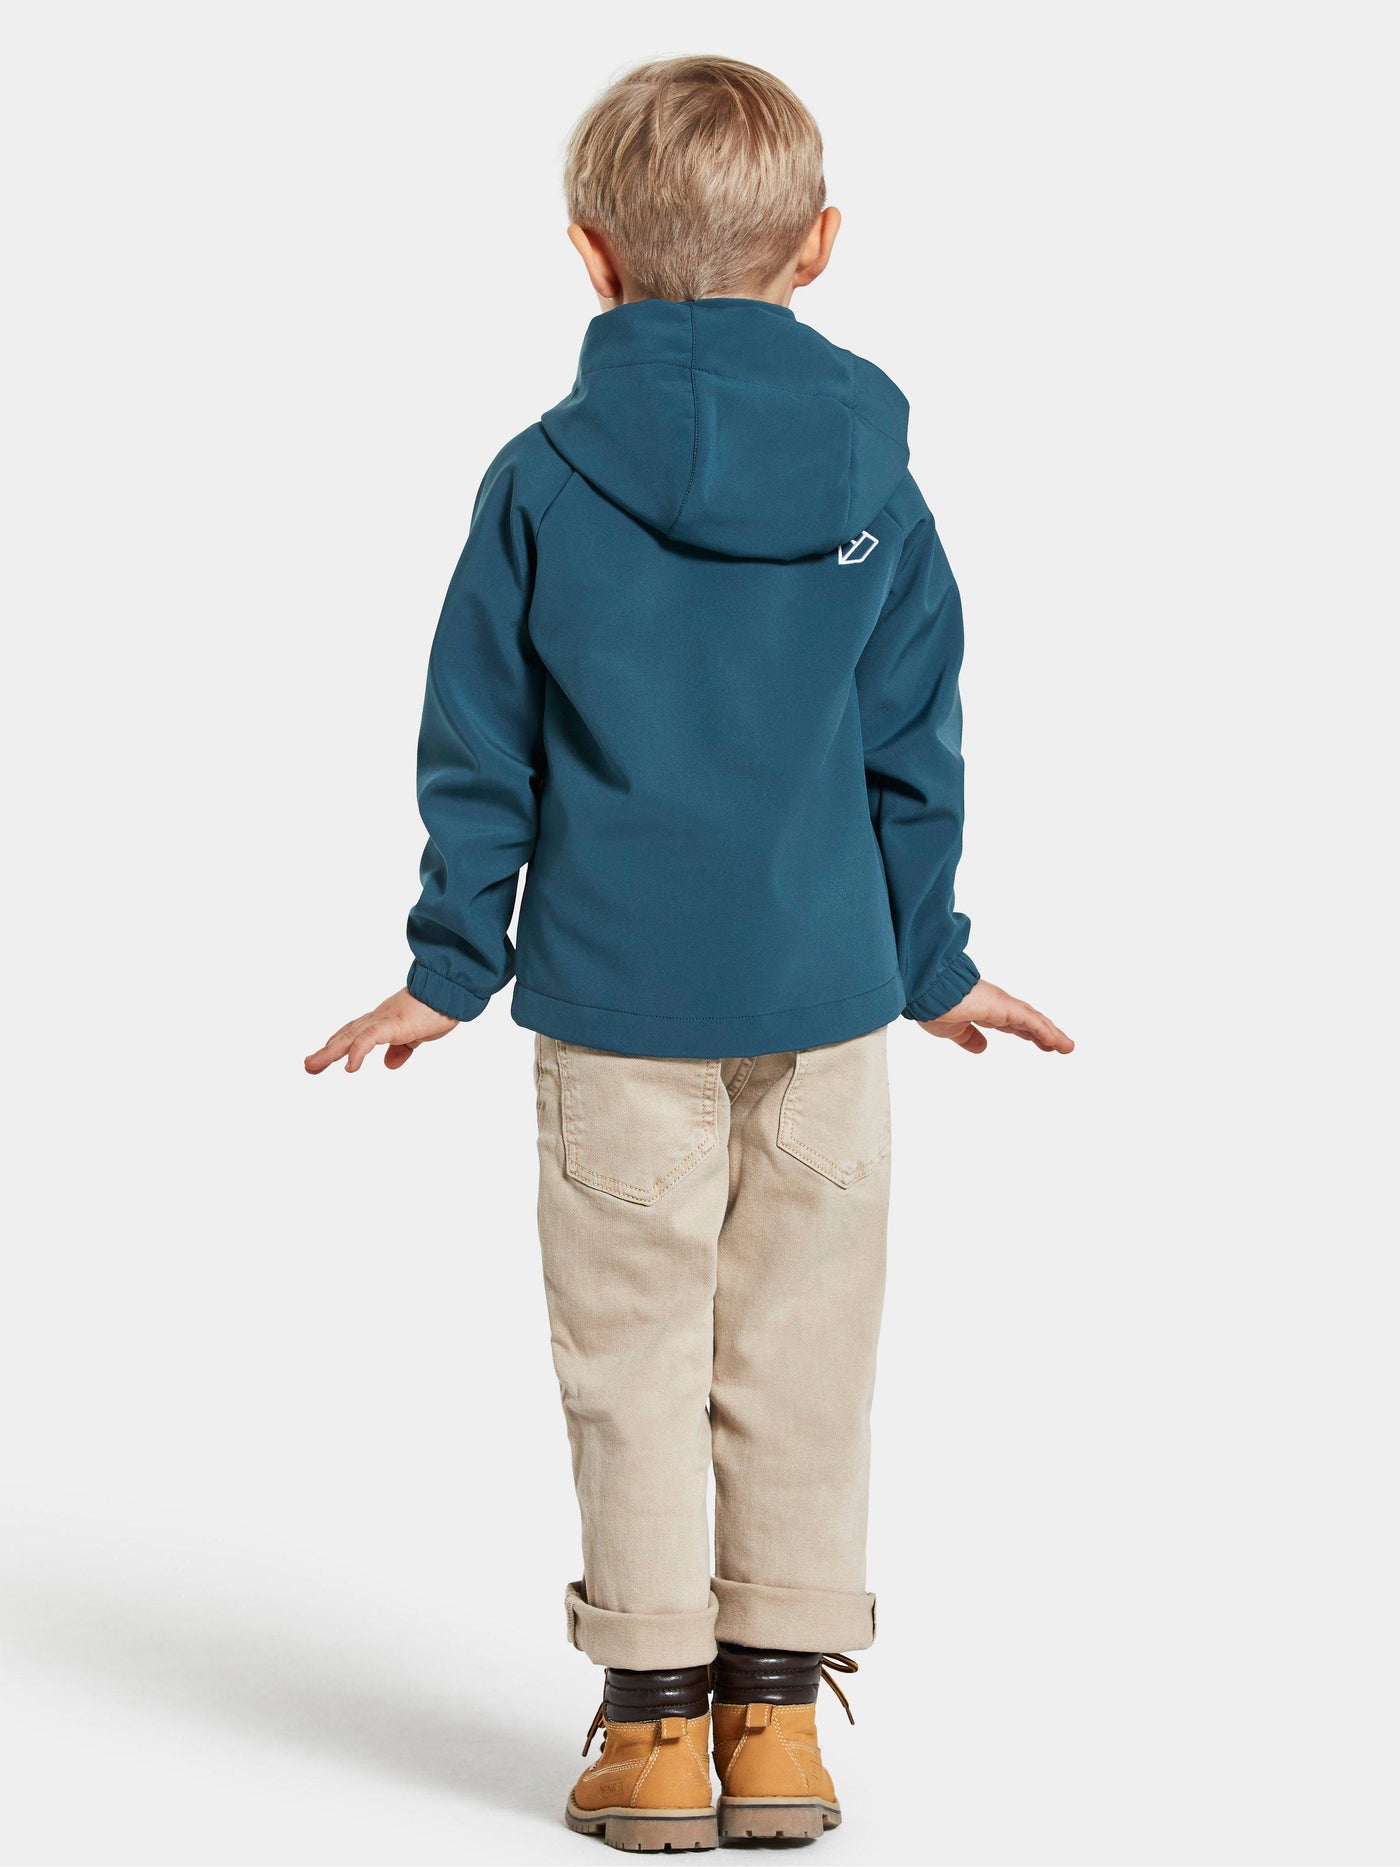 Didriksons Troel lasten softshell-takki pojan päällä takaa värissä Dive Blue